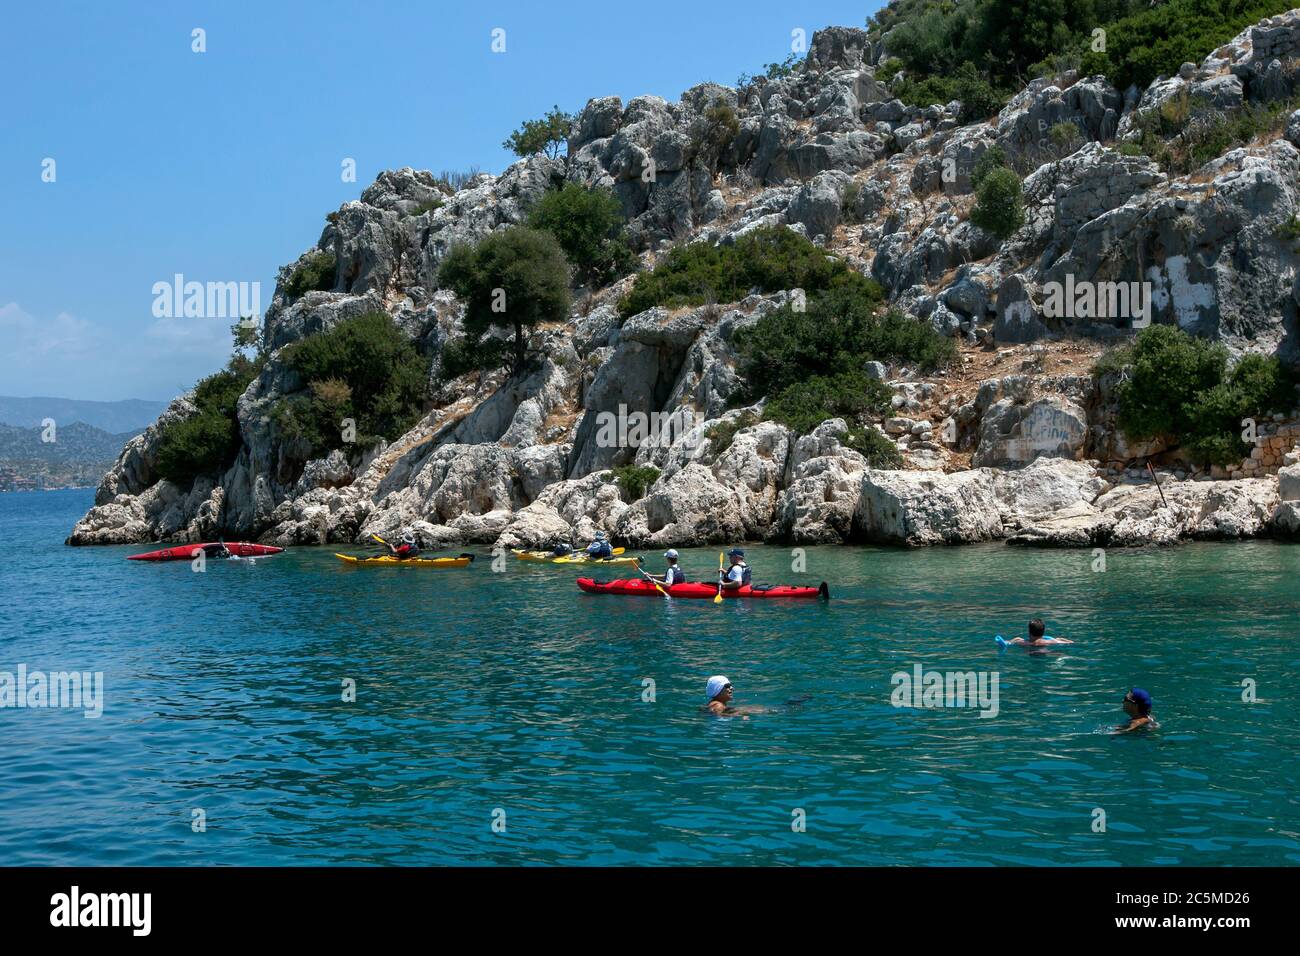 Kajakfahrer paddeln neben der versunkenen Stadt Simena vor der Kekova Insel in der Türkei. Die Stadt sank im Mittelmeer. Stockfoto